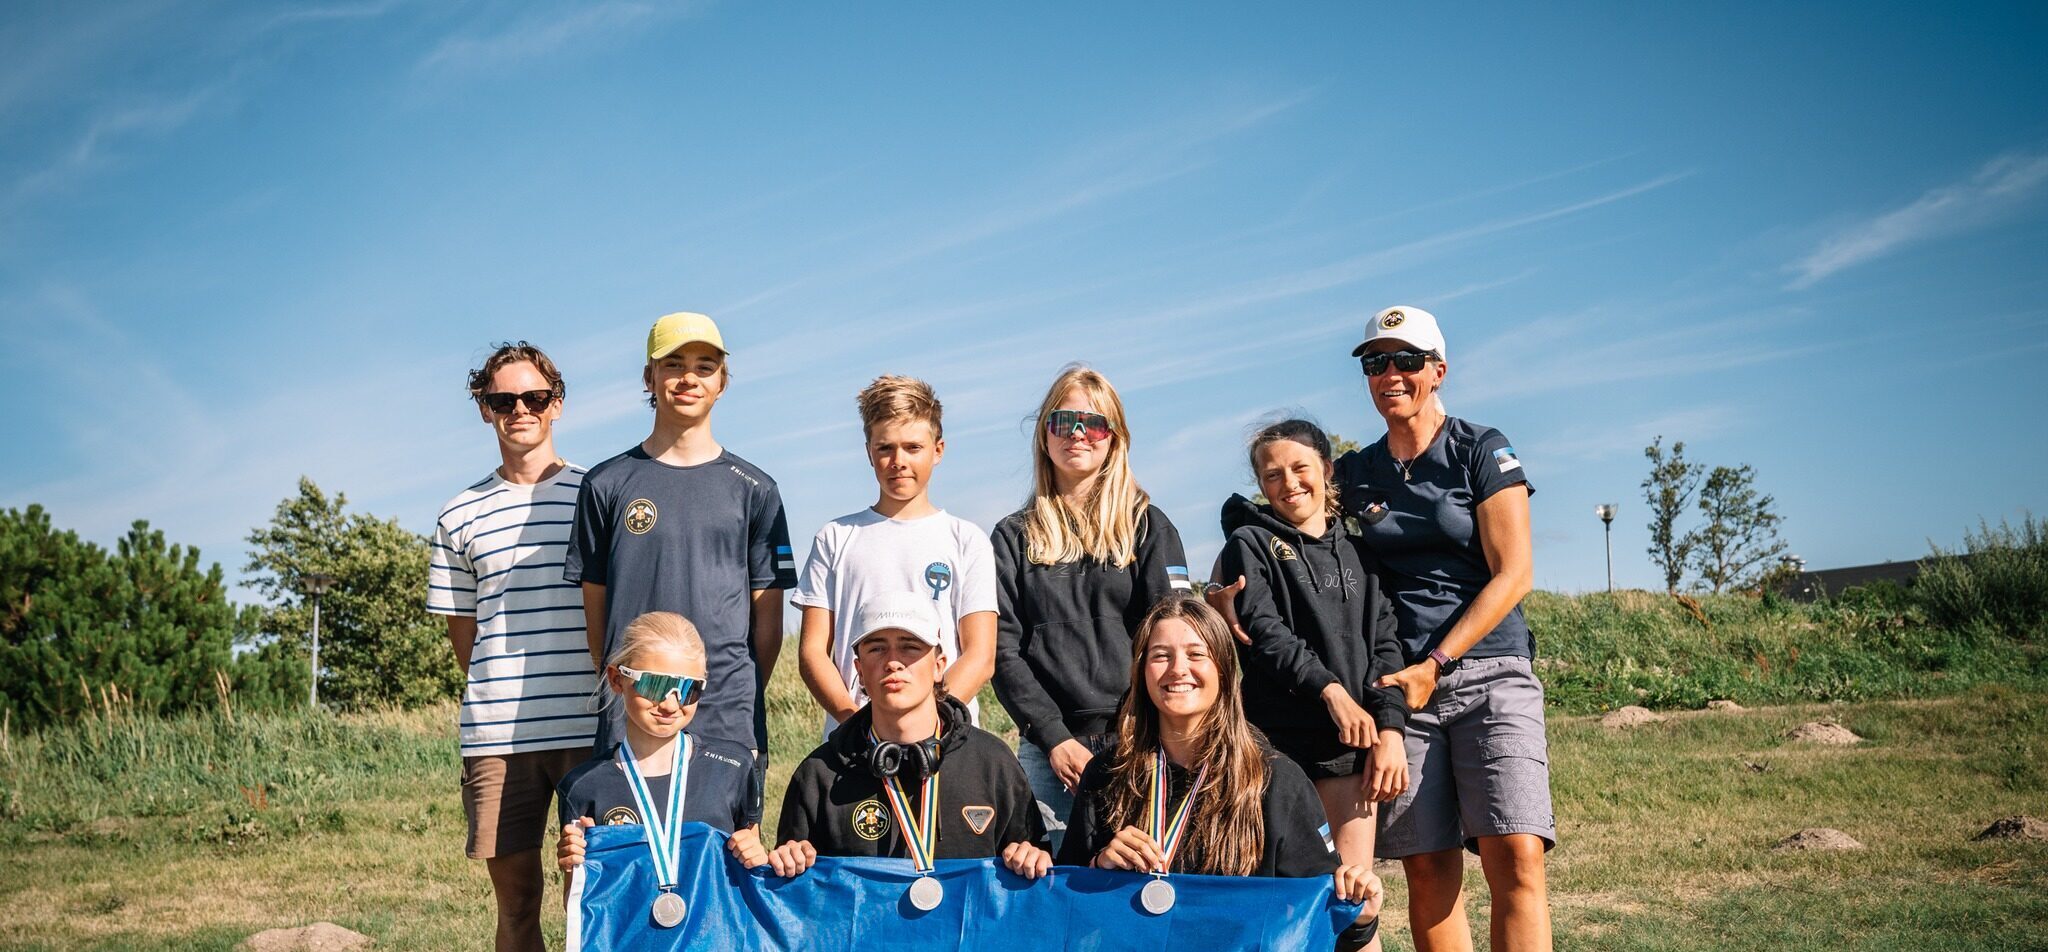 Tallinna Jahtklubi noored võitsid Põhjamaade meistrivõistlustelt kolm hõbemedalit!